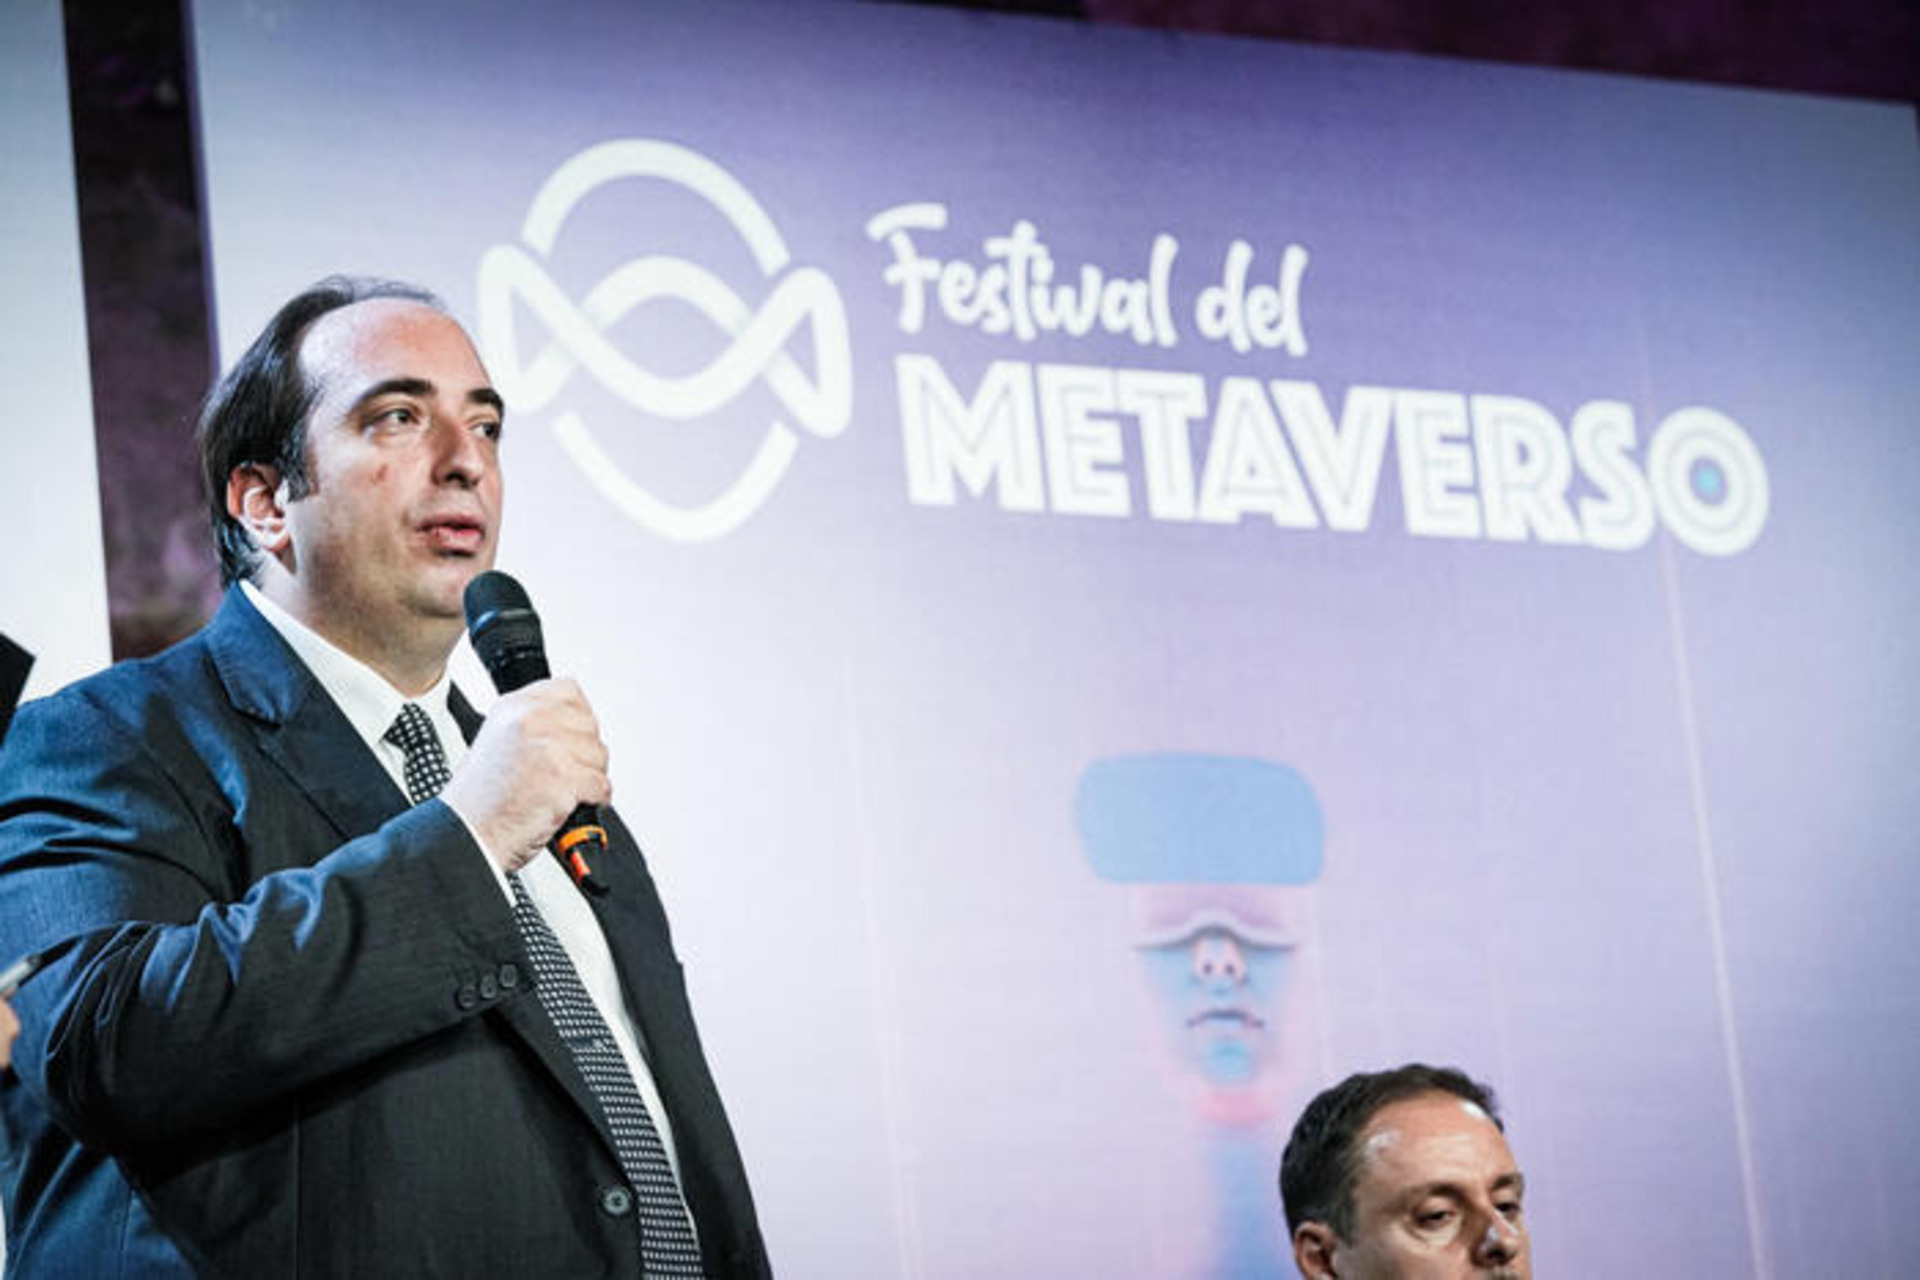 全國青年創新者協會主席 Gabriele Ferrieri 在 Metaverse 音樂節上